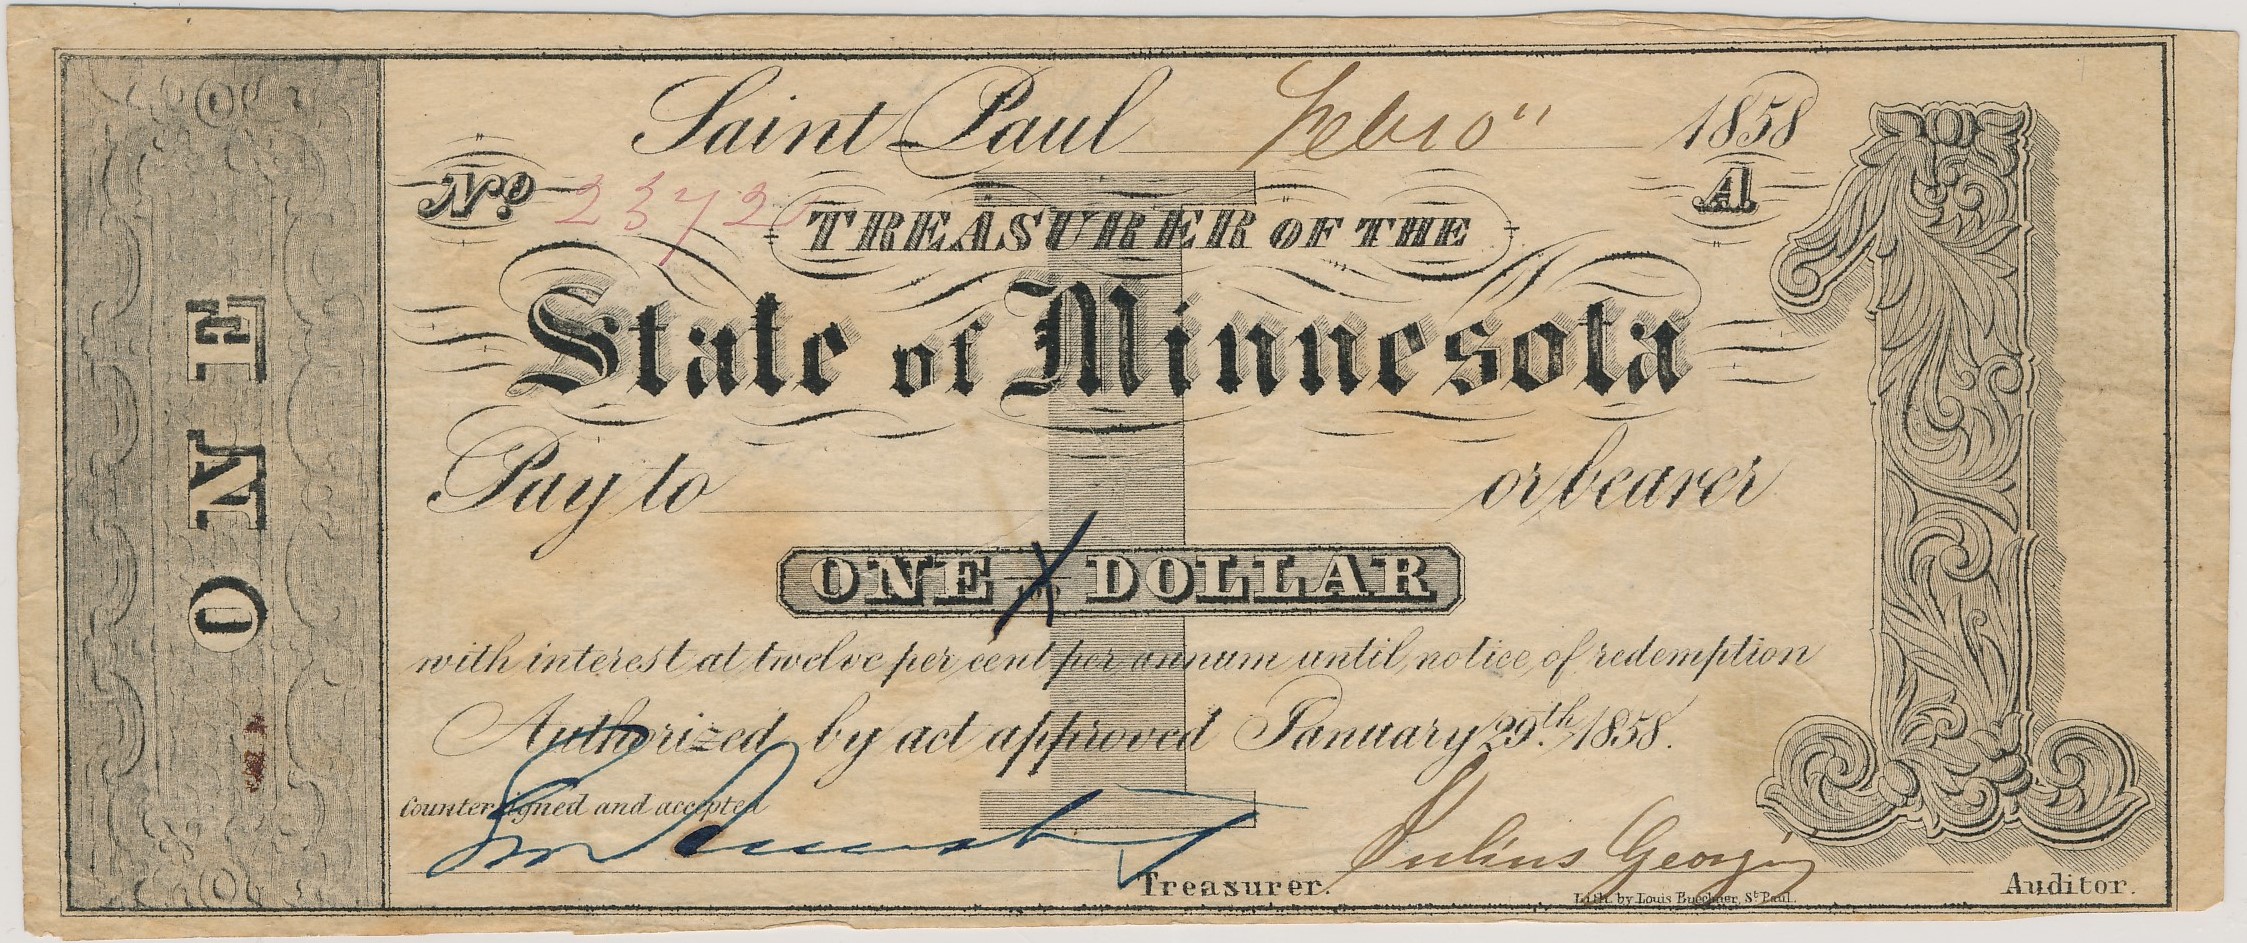 $1 Treasurer of the State of Minnesota (Handwritten Payee)